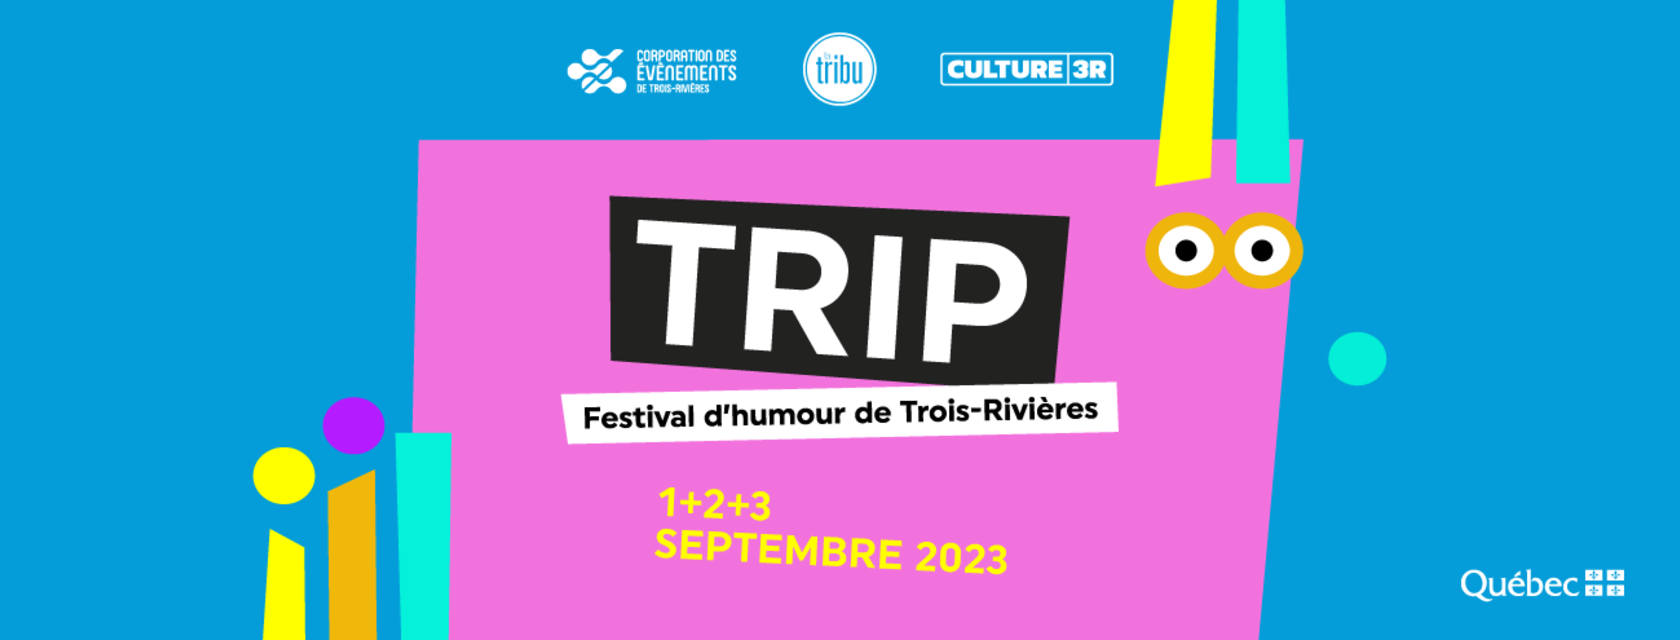 TRIP - Festival d’humour de Trois-Rivières  s’empare de la ville en septembre prochain!